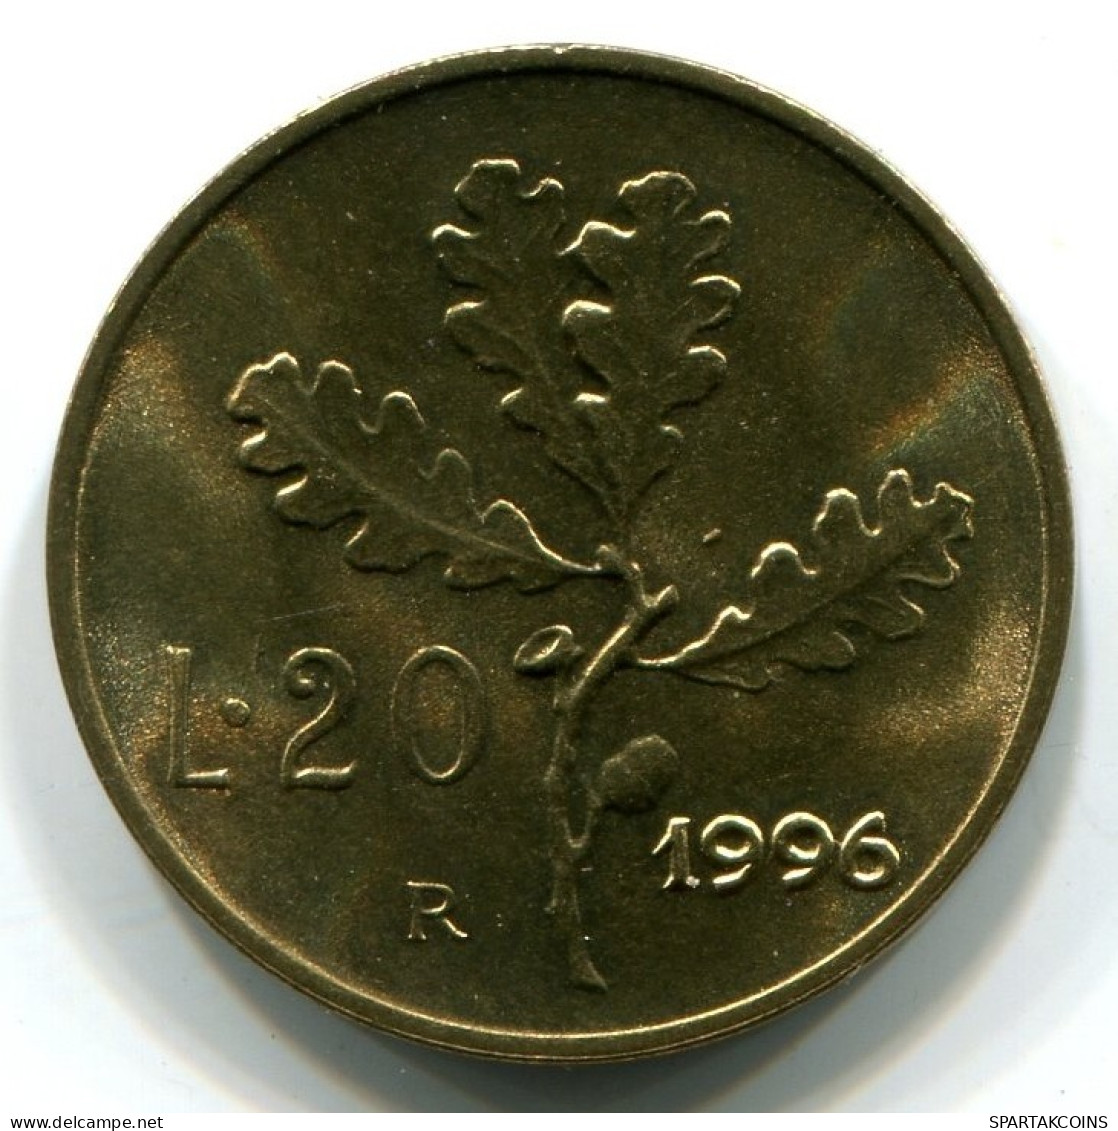 20 LIRA 1995 ITALY UNC Coin #W11354.U.A - 20 Liras